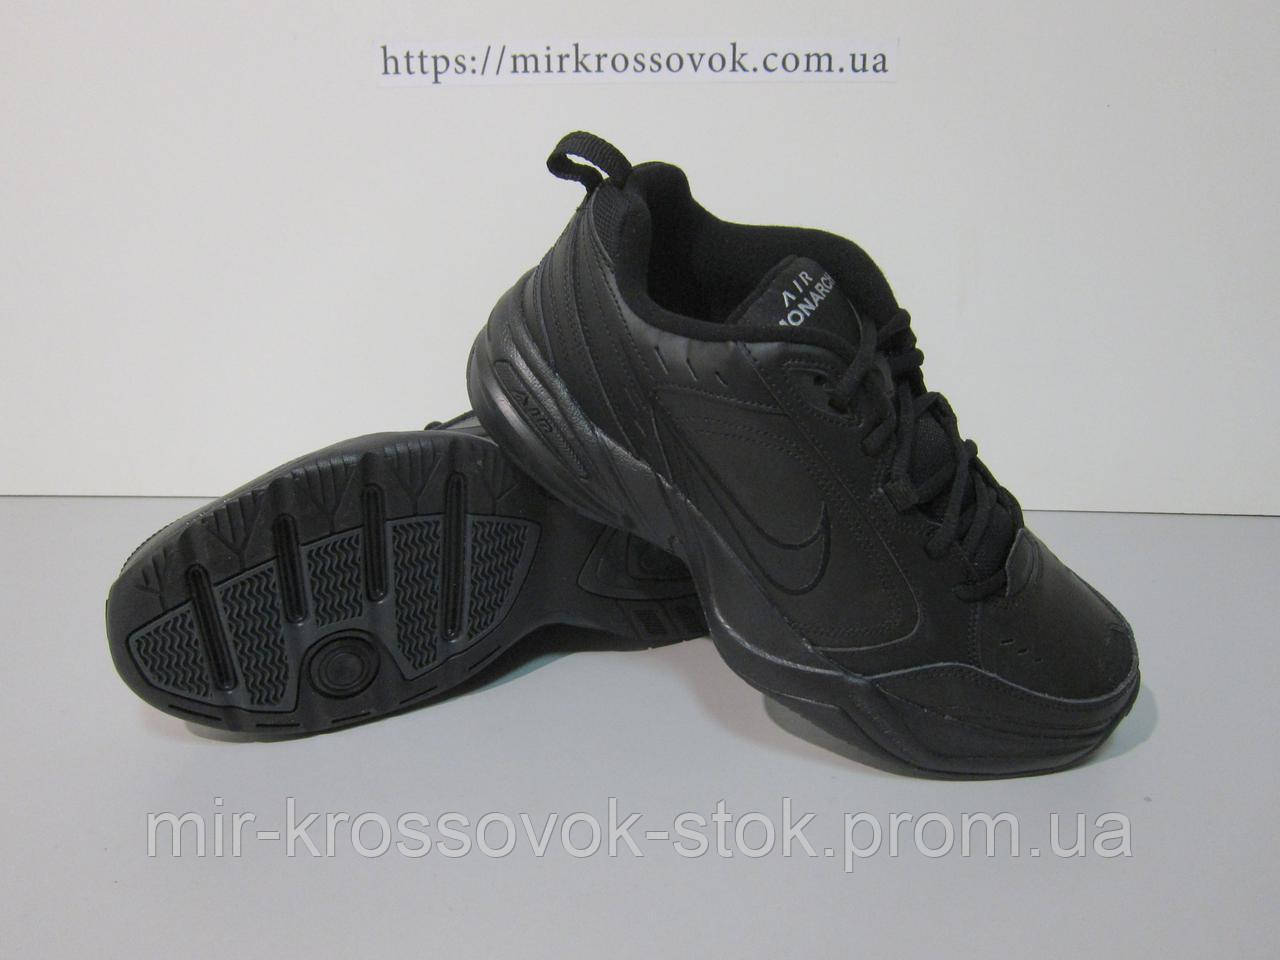 Кроссовки Мужские ( 31см 47.5р ) Nike Air Monarch IV Black (415445-001)  (оригинал) — в Категории "Беговые Кроссовки" на Bigl.ua (950387191)